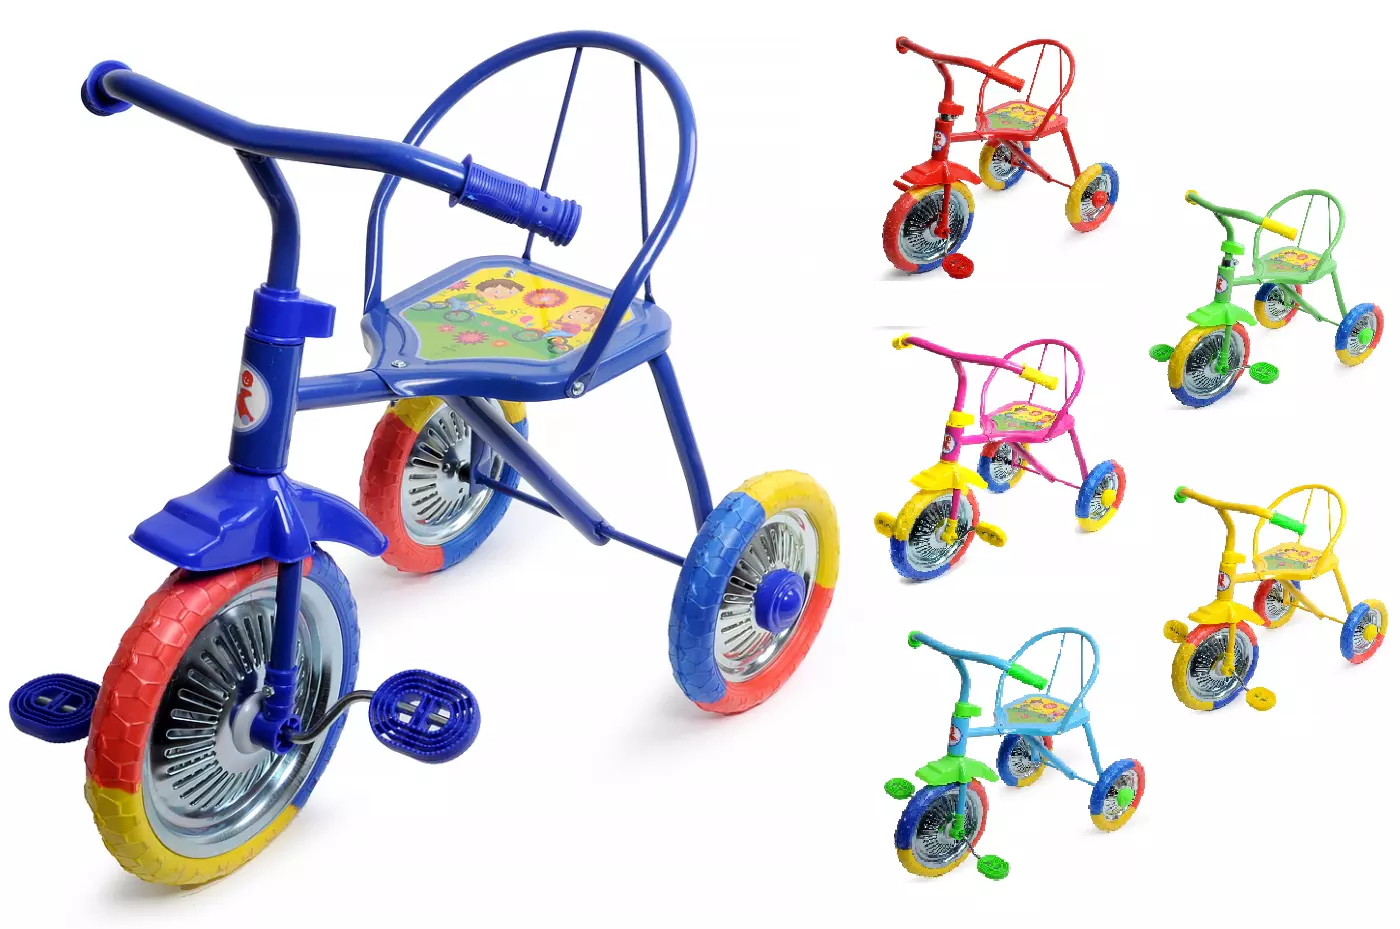 Колеса на детский трехколесный велосипед. Велосипед трехколесный lh702. Велосипед 3-х озорной ветерок GV-b3-2mx цвета микс. Трехколесный велосипед PN-1010, Panterra, "гвоздик". Велосипед трёхколёсный детский lh702.